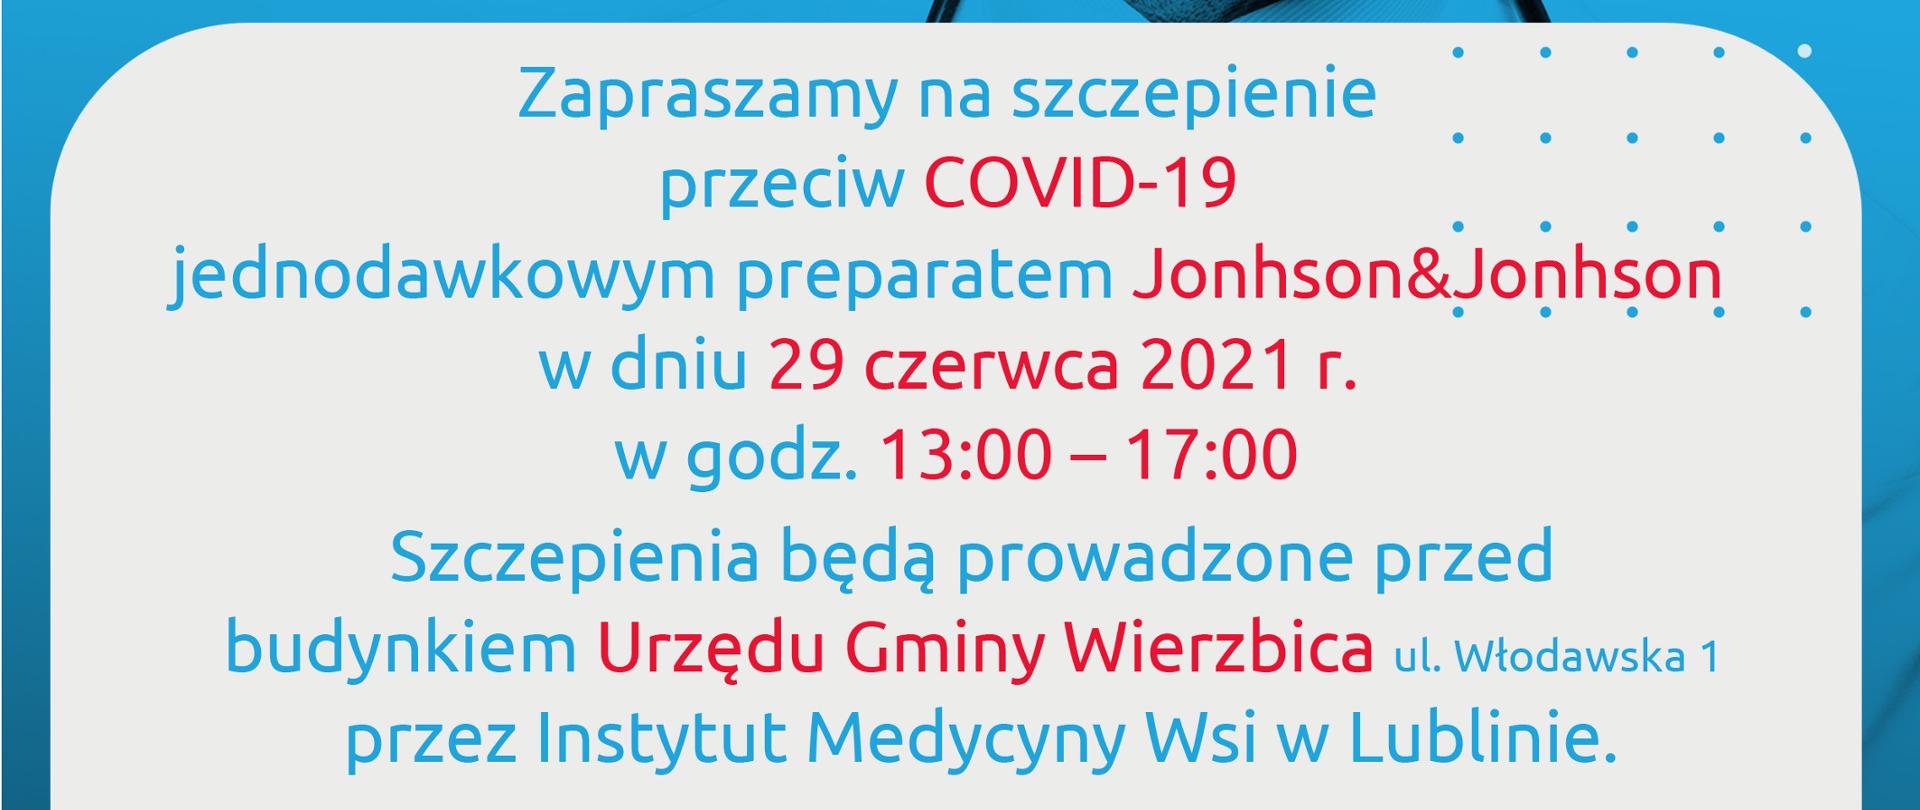 
Zapraszamy na szczepienie przeciw COVID-19 jednodawkowym preparatem Jonhson&Jonhson w dniu 29 czerwca 2021 r. w godz. 1300 – 1700
Szczepienia będą prowadzone przed budynkiem Urzędu Gminy WIerzbica ul. Włodawska 1 przez Instytut Medycyny Wsi w Lubline.
Nie wymagana wcześniejsza rejestracja.
Wydawanie paszportów bezpośrednio po zaszczepieniu.